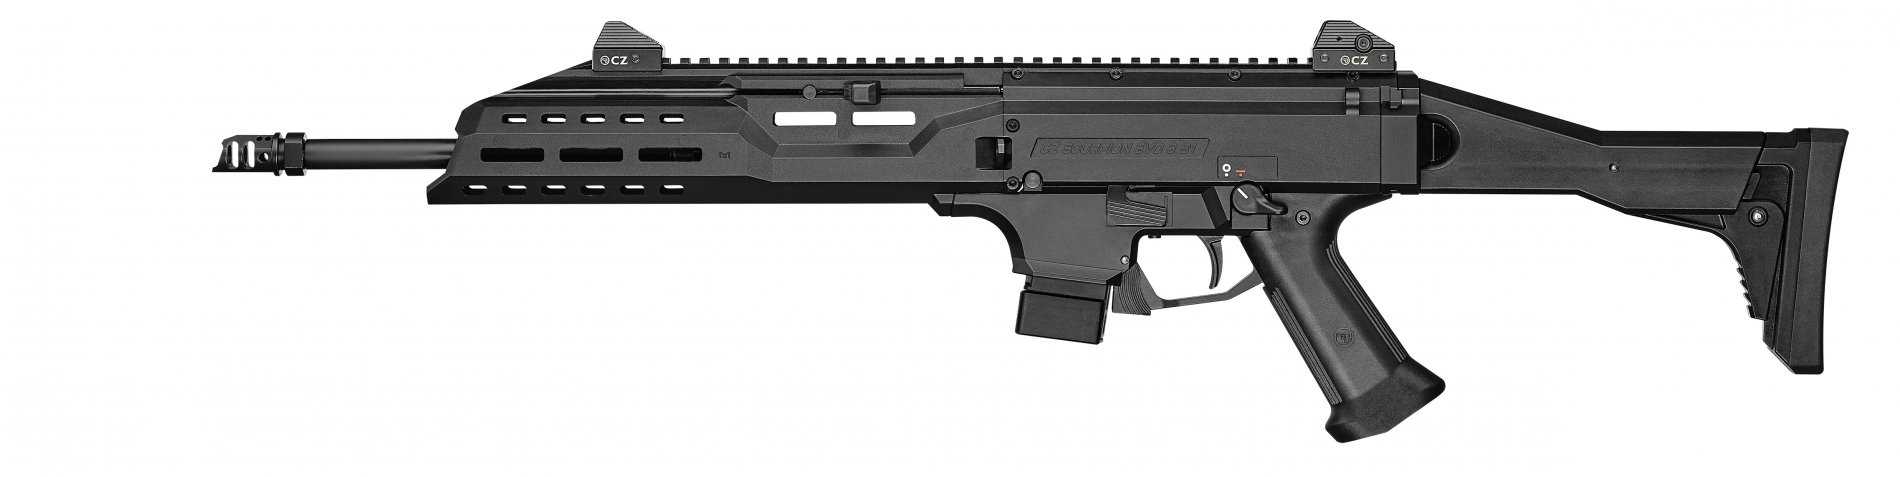 Cz Scorpion Evo 3 S1 Carbine